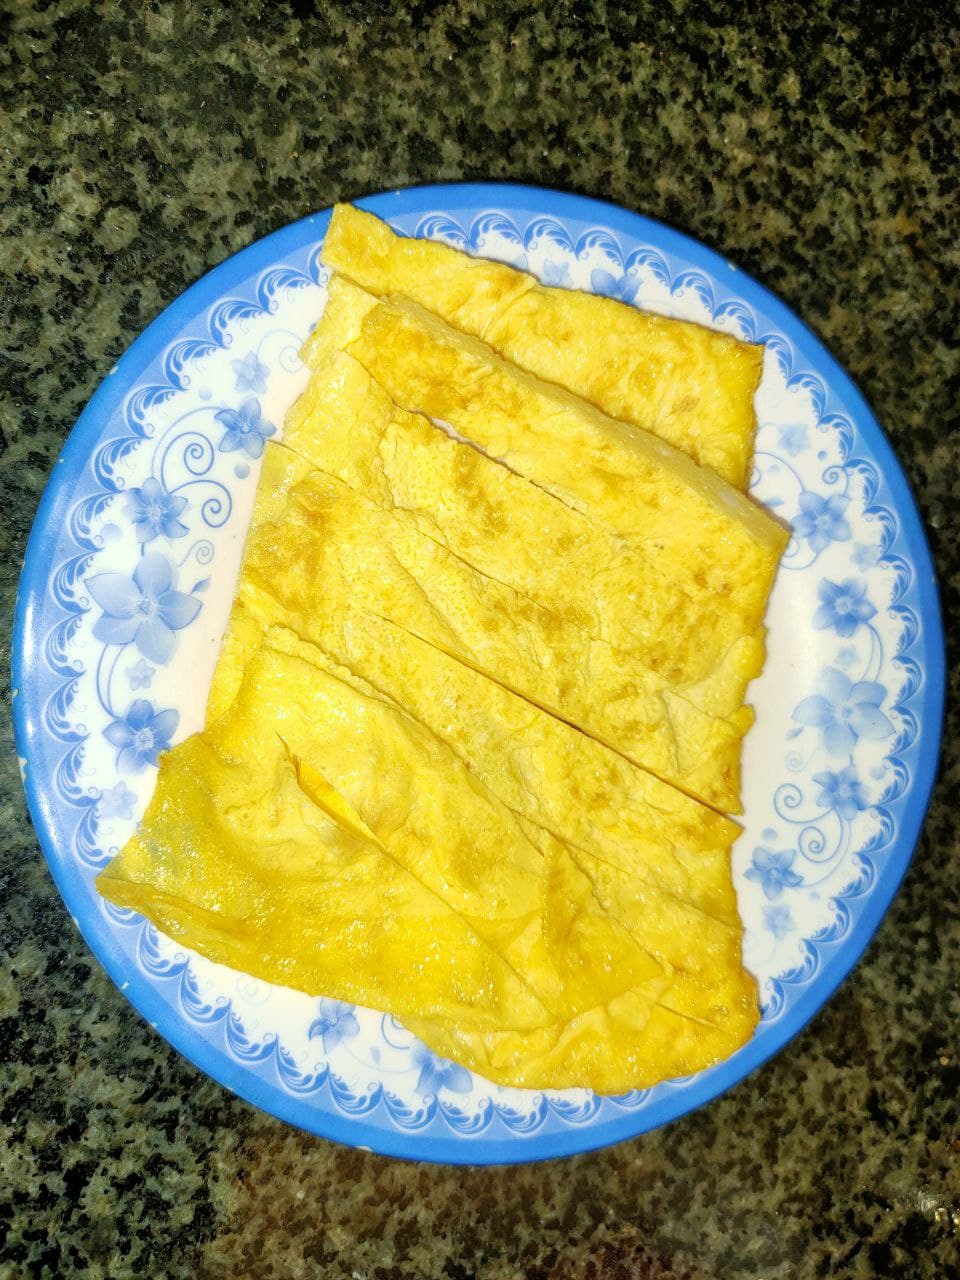 06.Omelete Egg